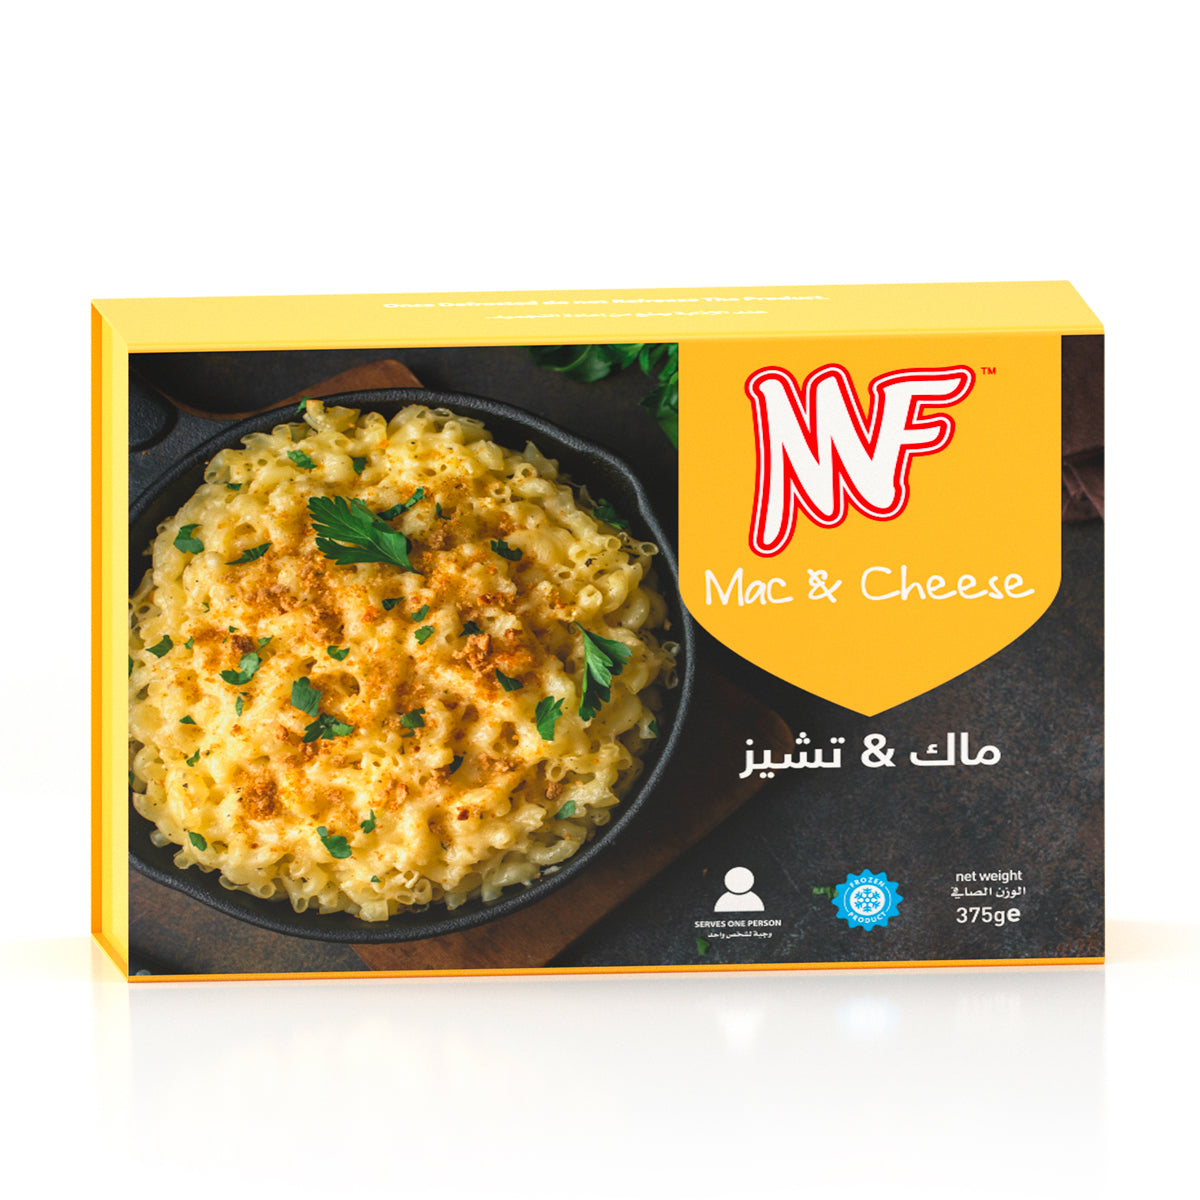 MF Mac & Cheese Pasta 375g